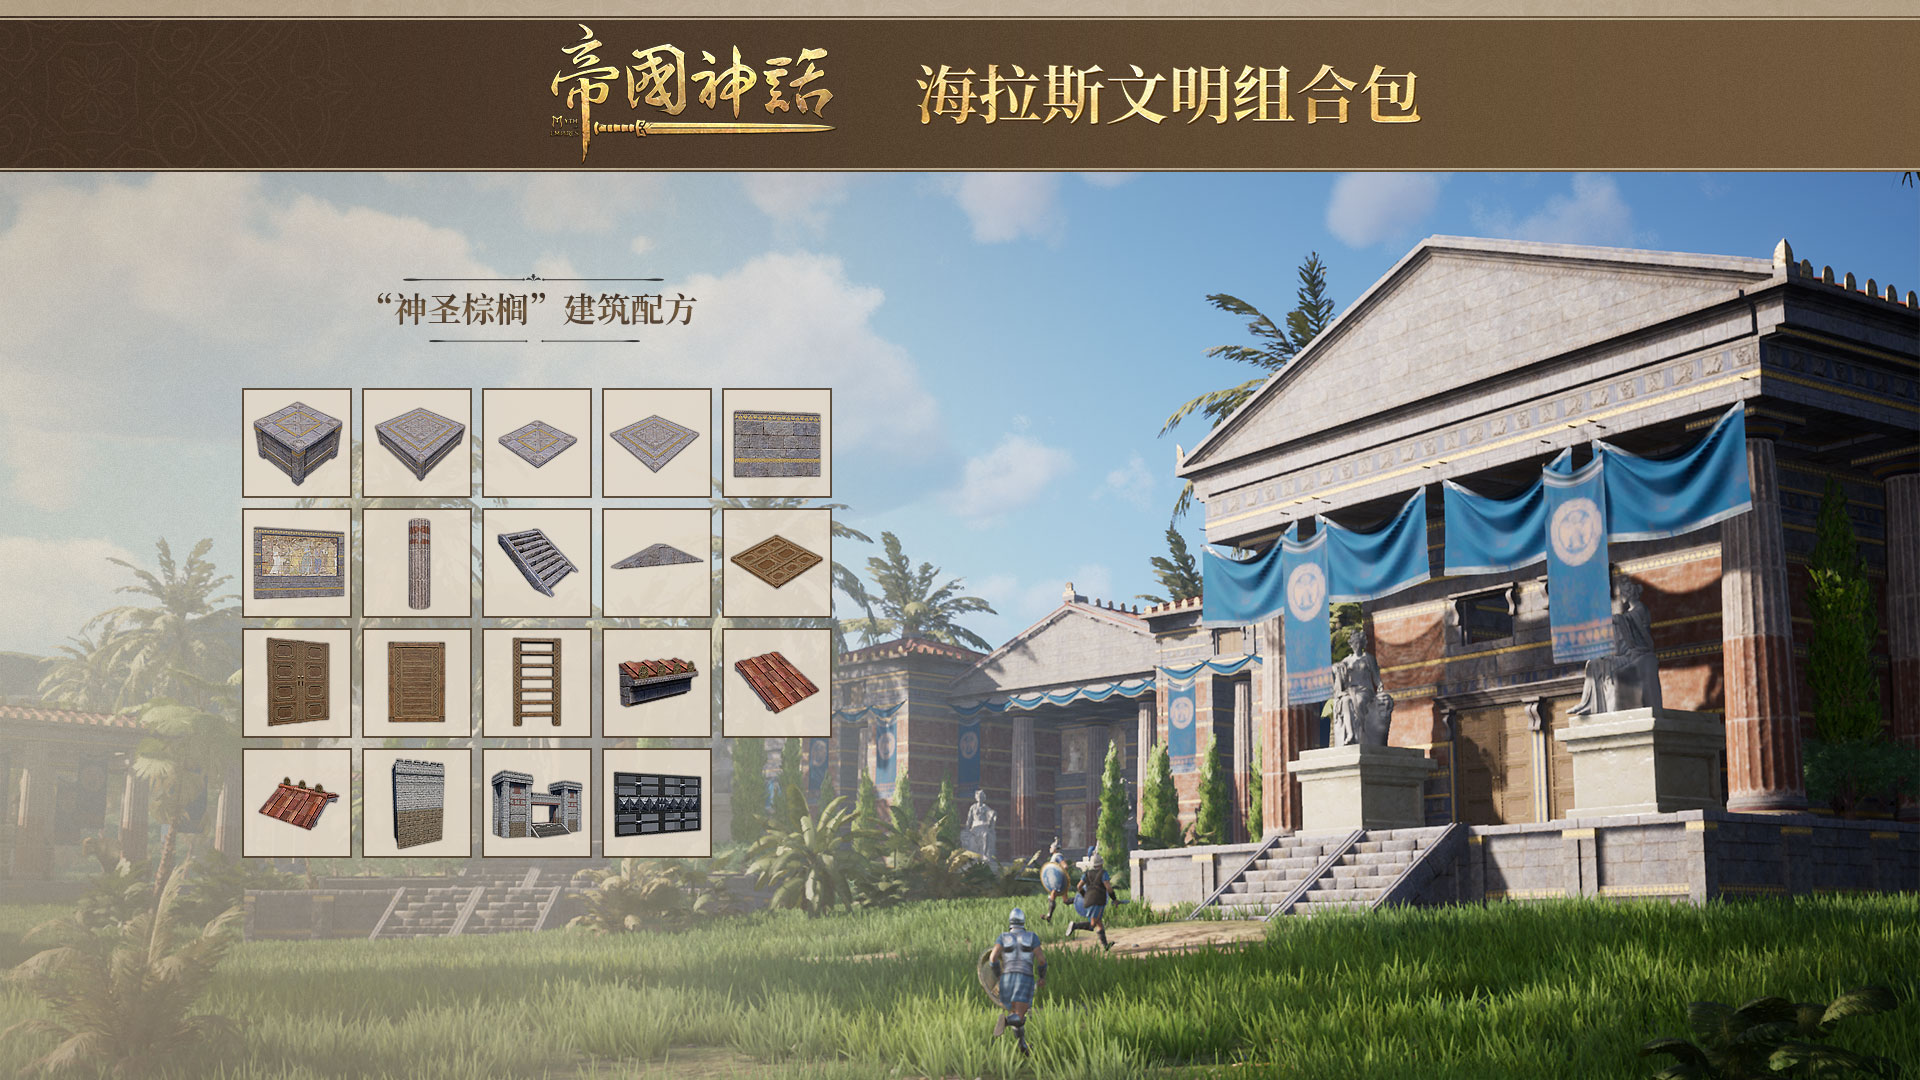 《帝国神话》正式发布海拉斯文明DLC，同步开启夏促新史低